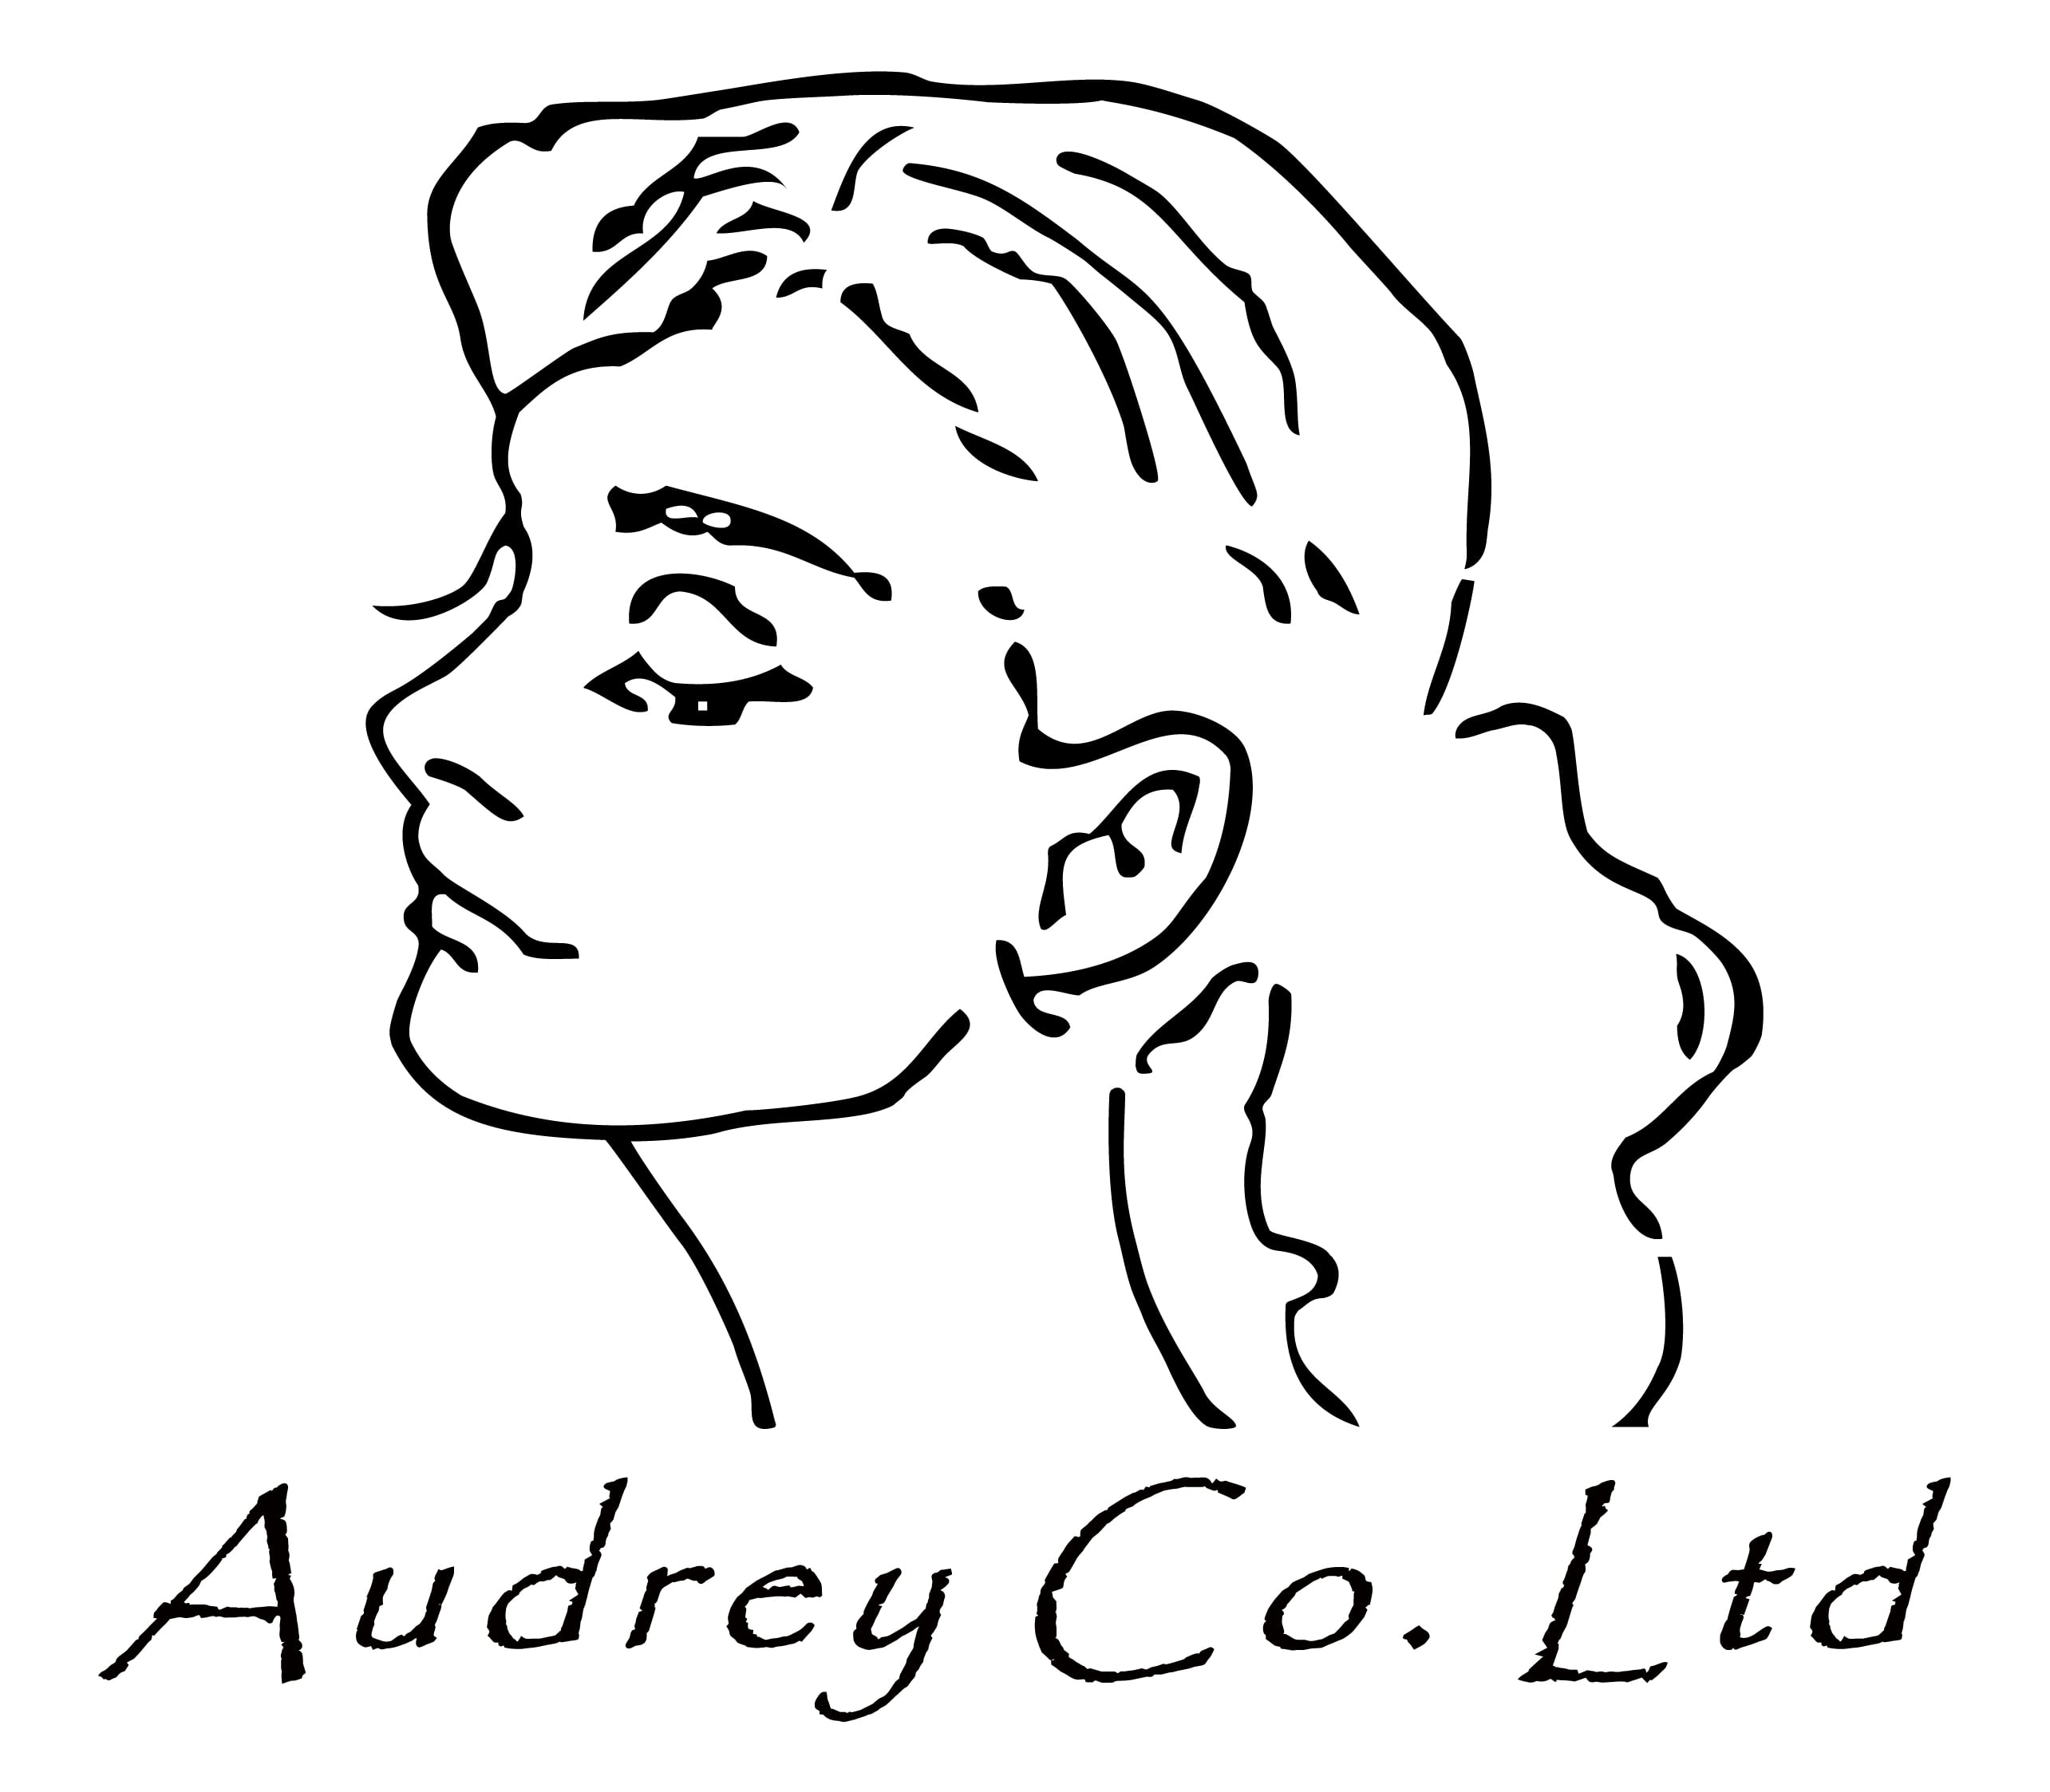 Audrey Co. Ltd